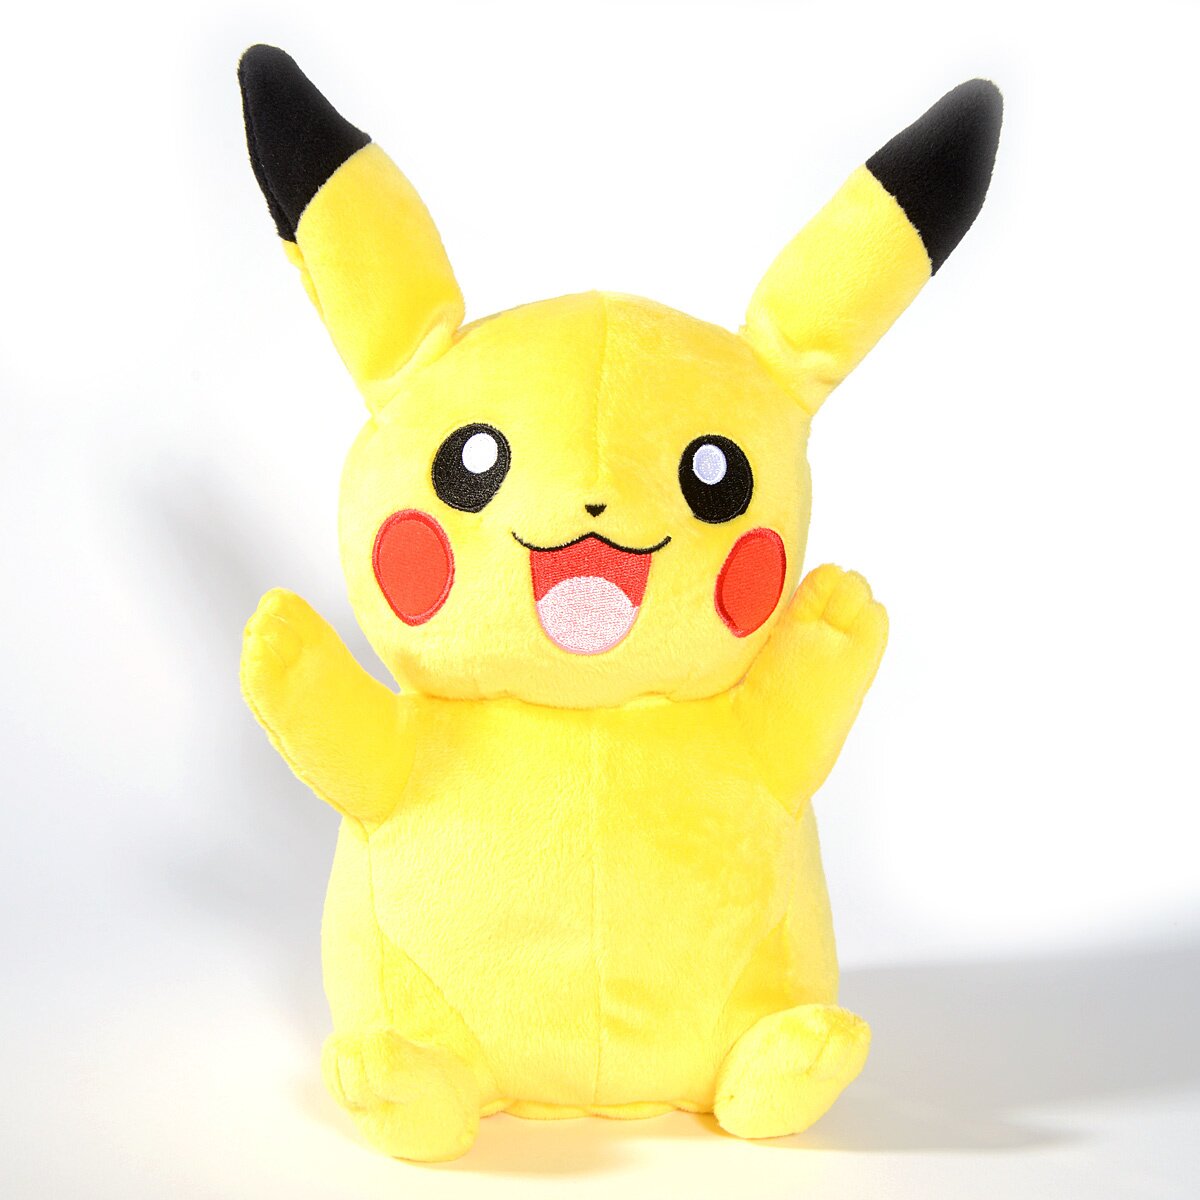 Pokémon My Friend Pikachu - Tokyo Otaku Mode (TOM)